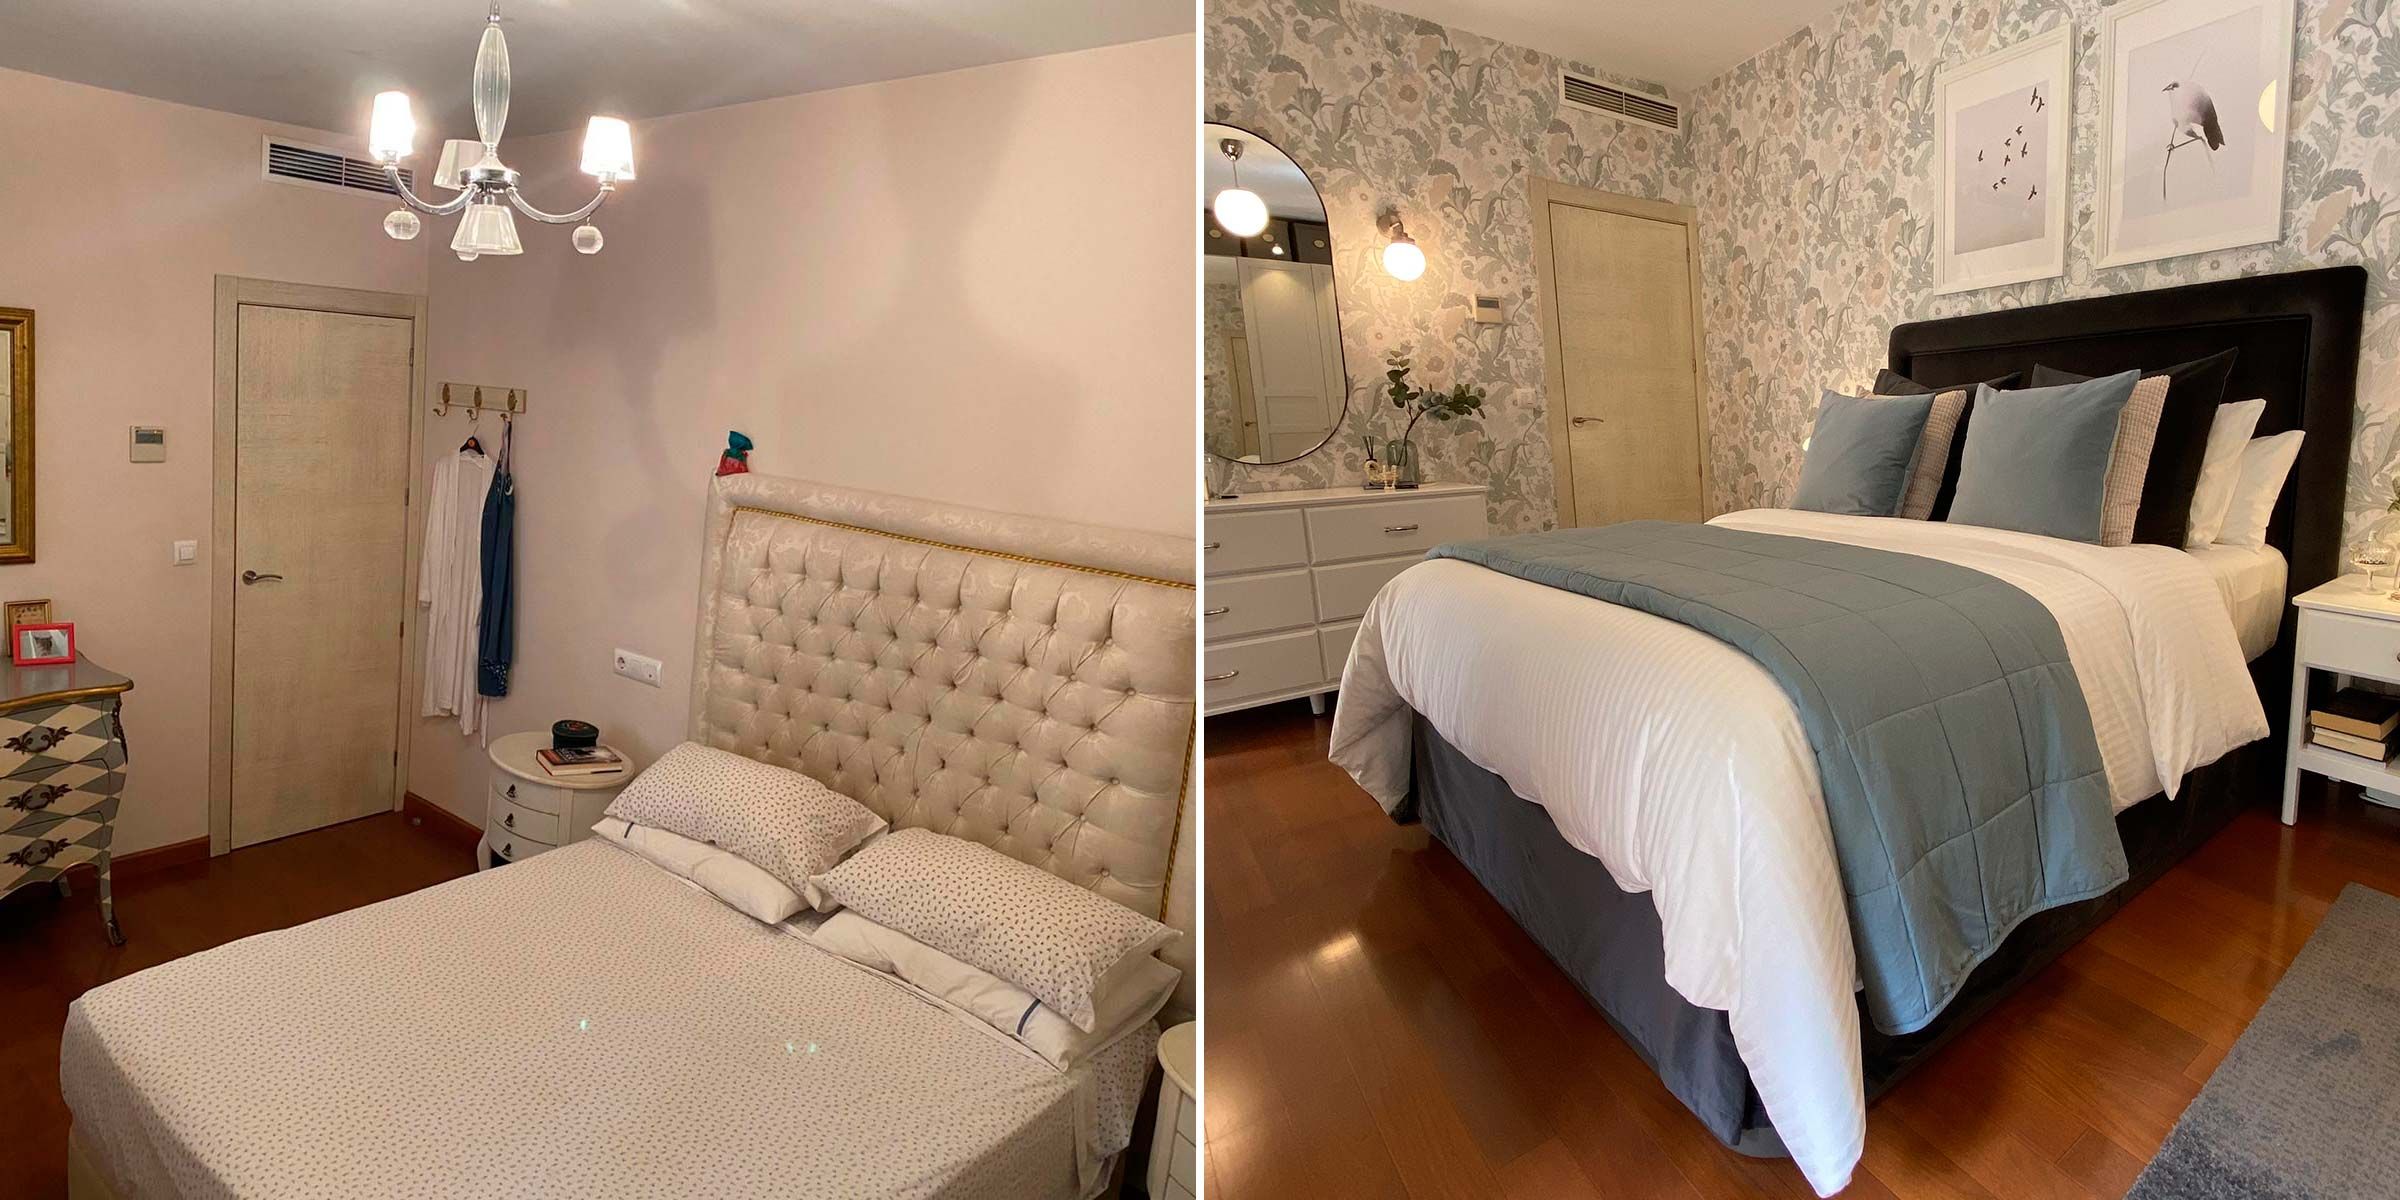 Descubre el antes y después de un dormitorio pequeño - IKEA